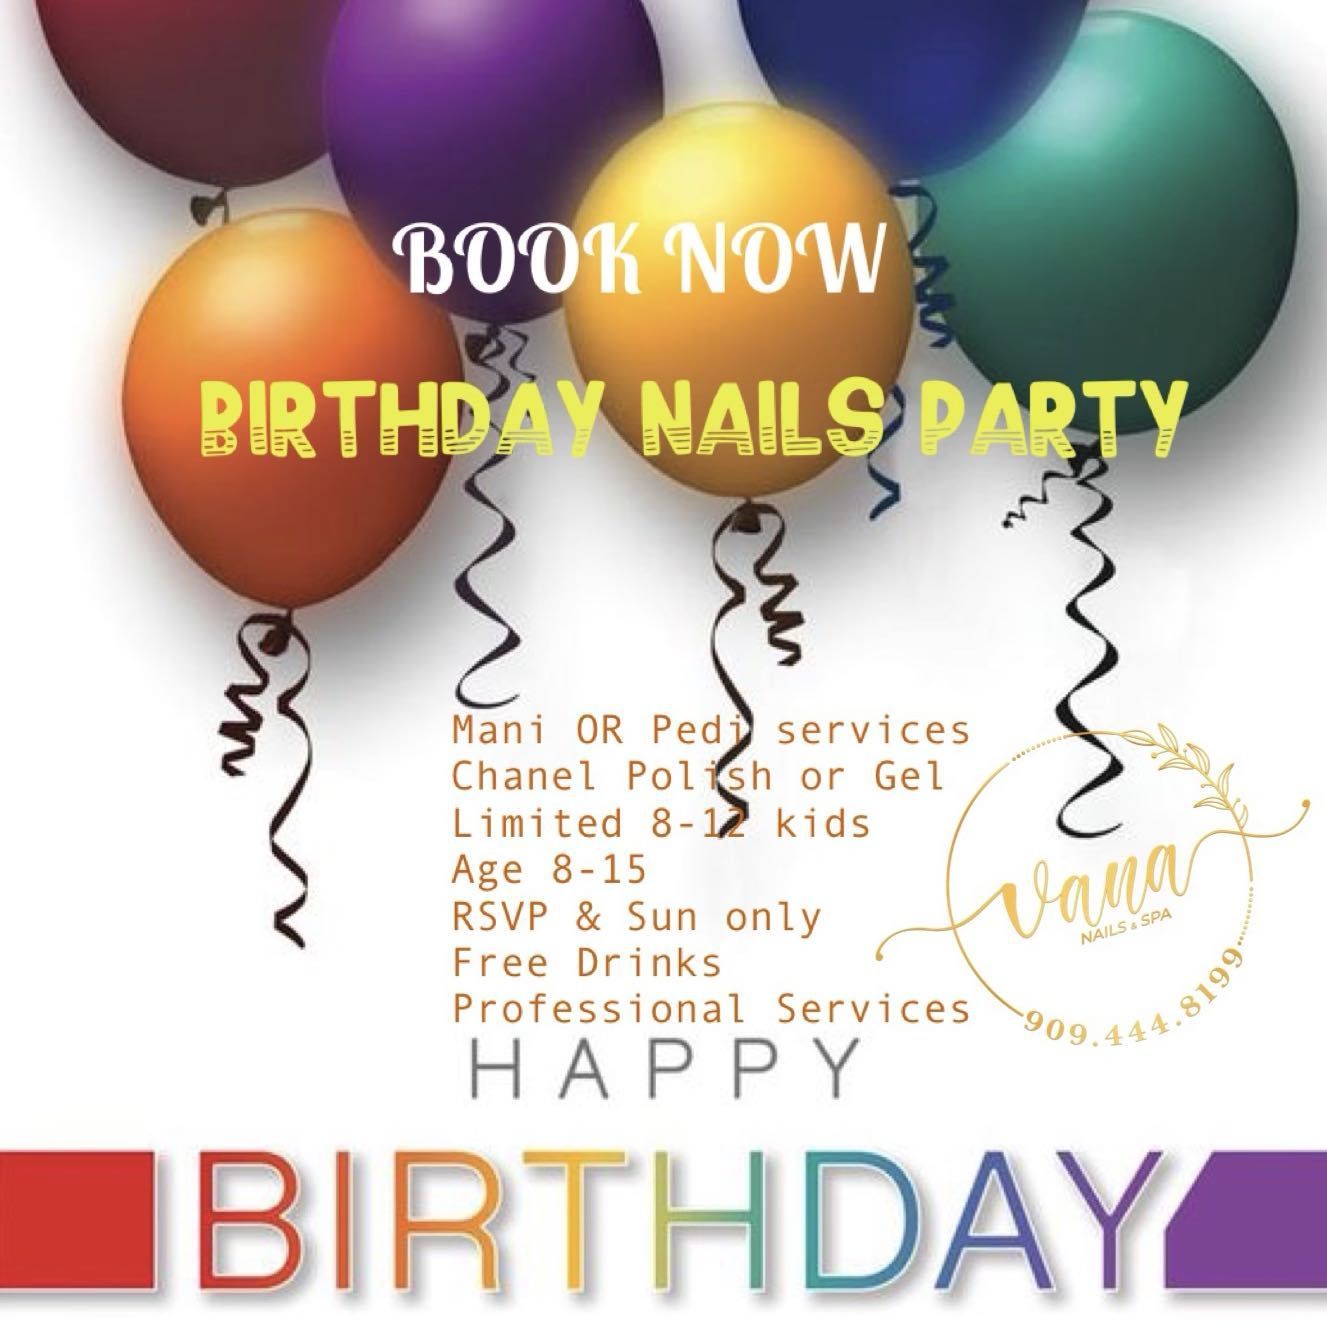 NAILS BIRTHDAY PARTY portfolio